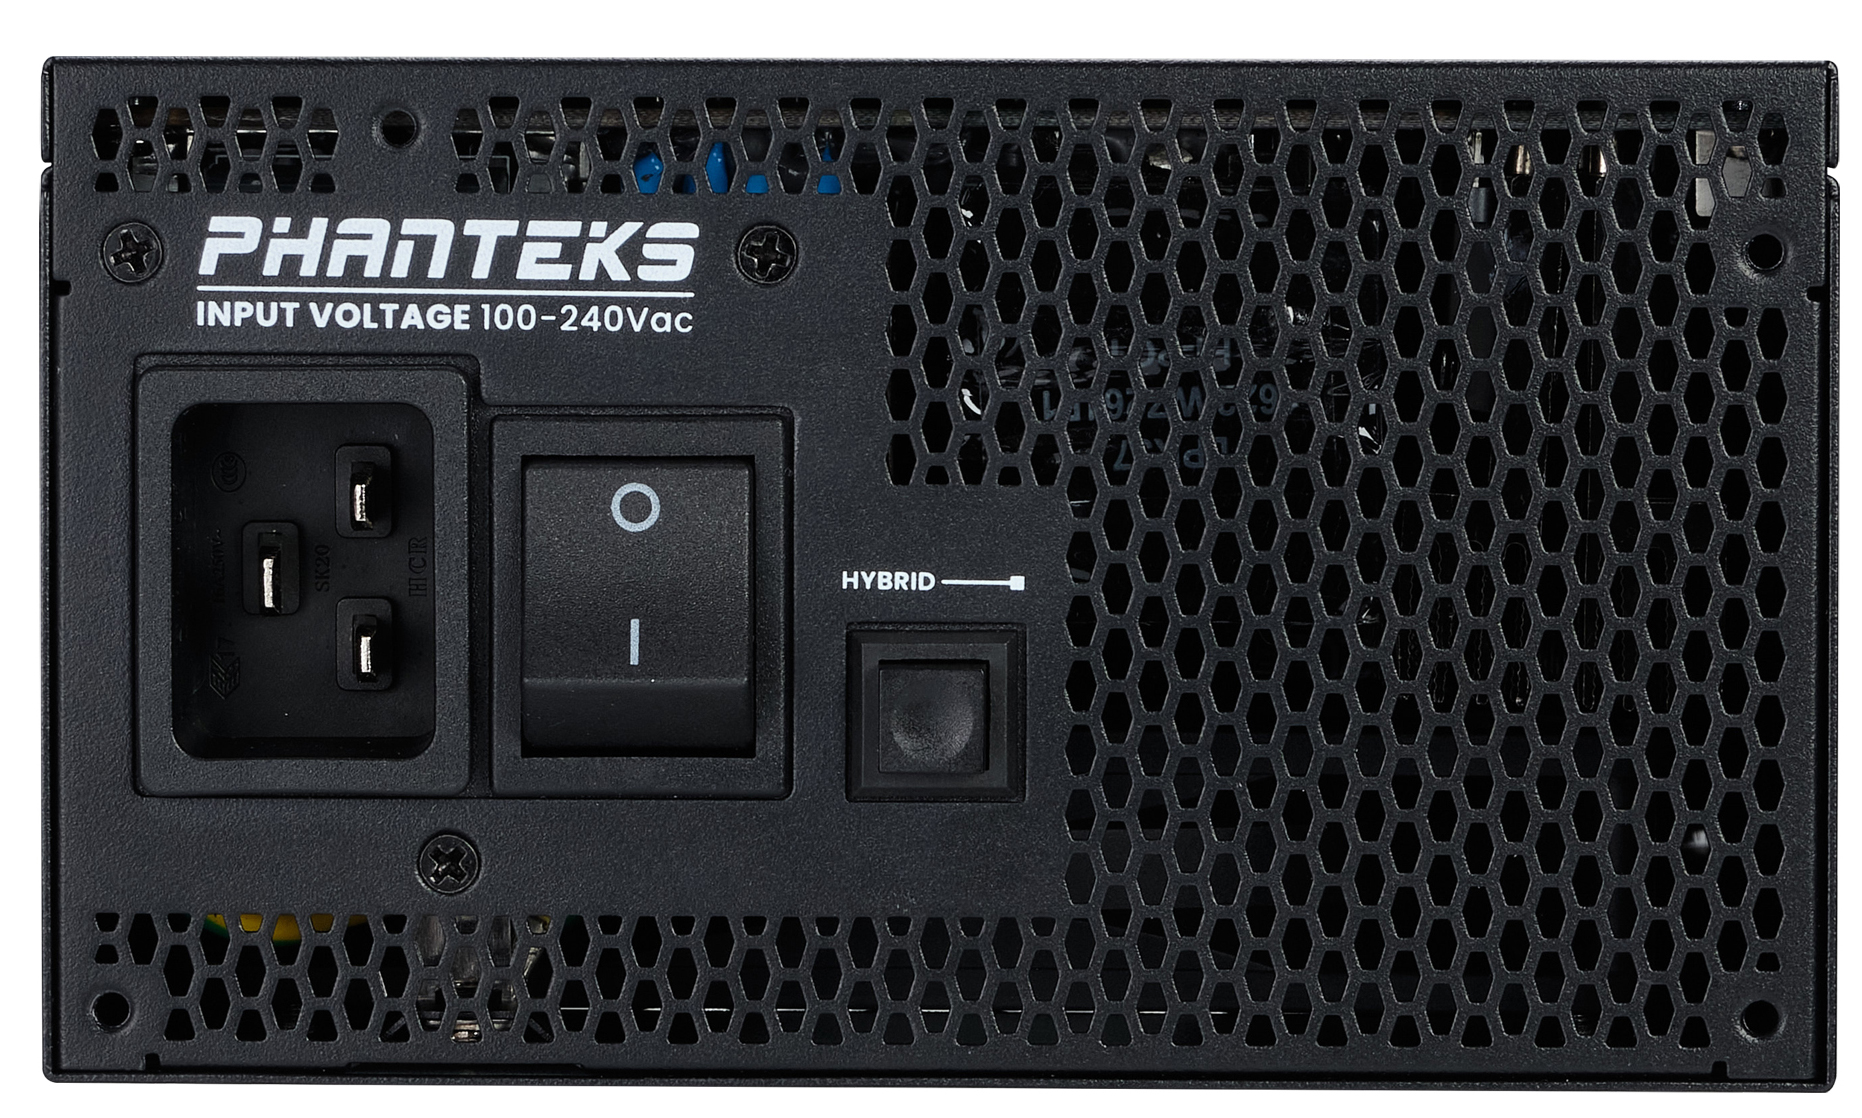 Phanteks - Fonte Modular Phanteks Revolt ATX 3.0 PCIe 5.0 1600W Titanium Preta (Sem Cabos Incluídos)